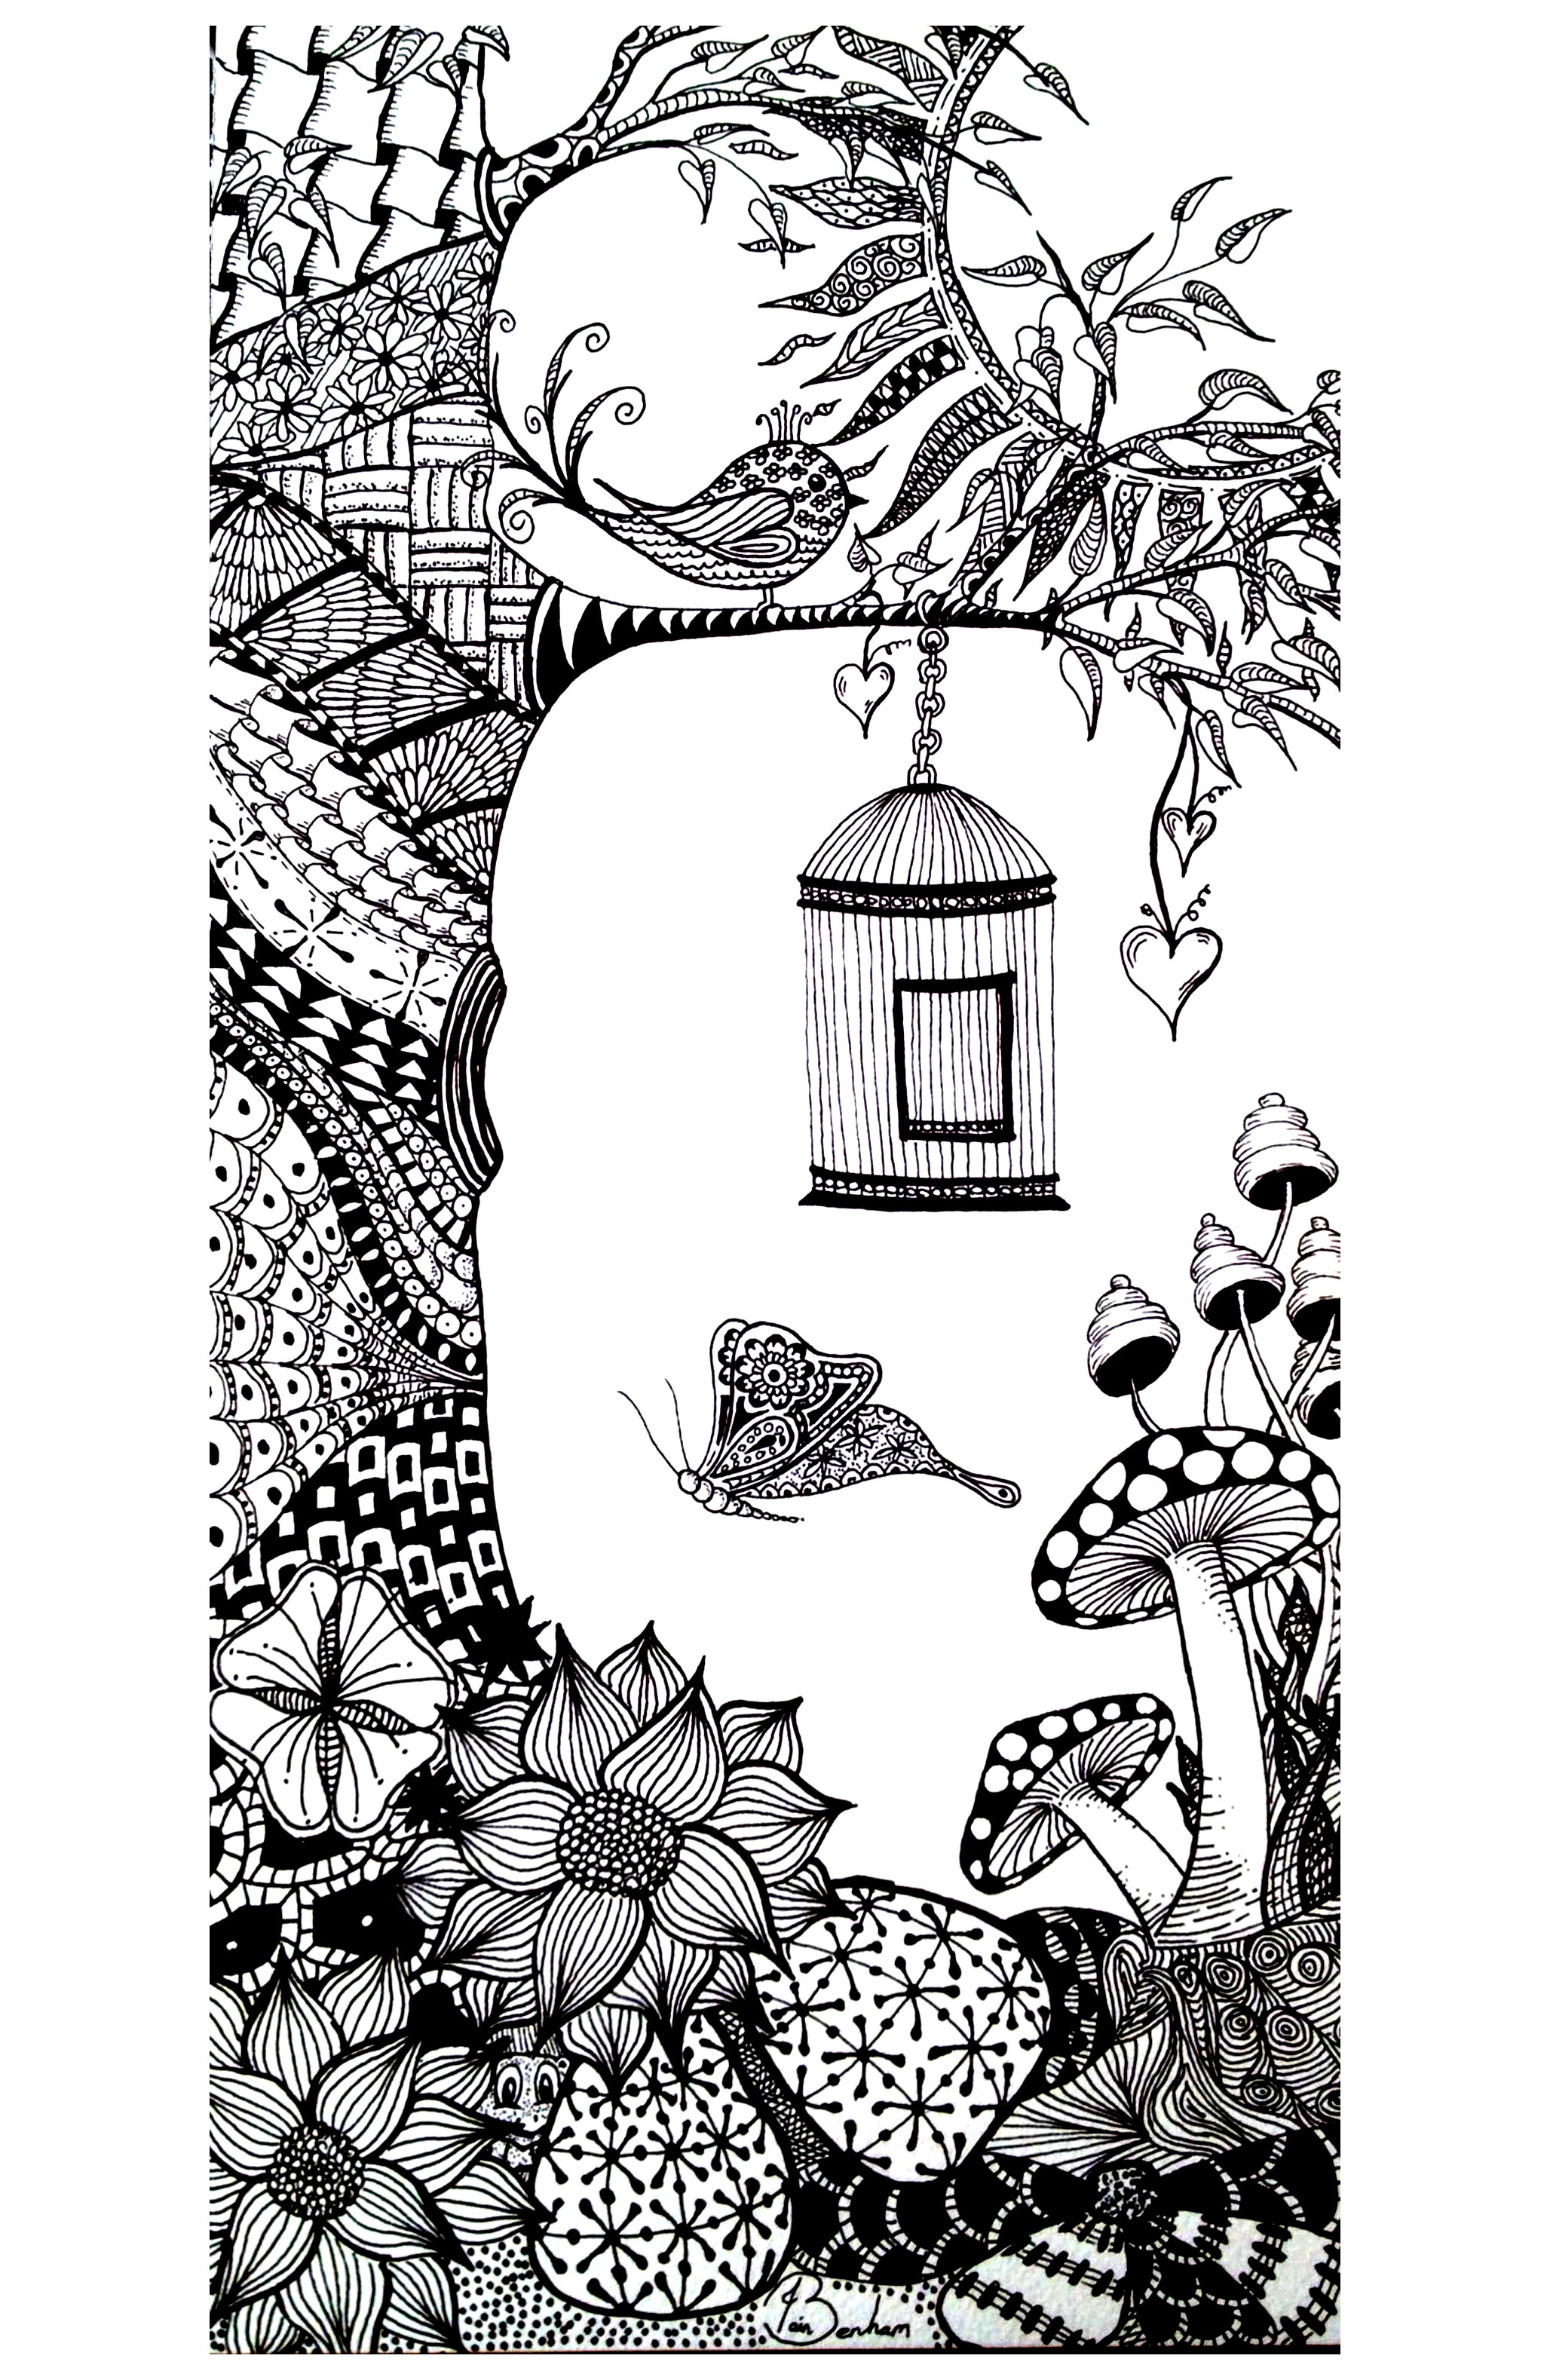 Zeichnung zum Ausmalen mit einem Baum, einem Vogel, Schmetterlingen ... Bunte Zentangle-Muster